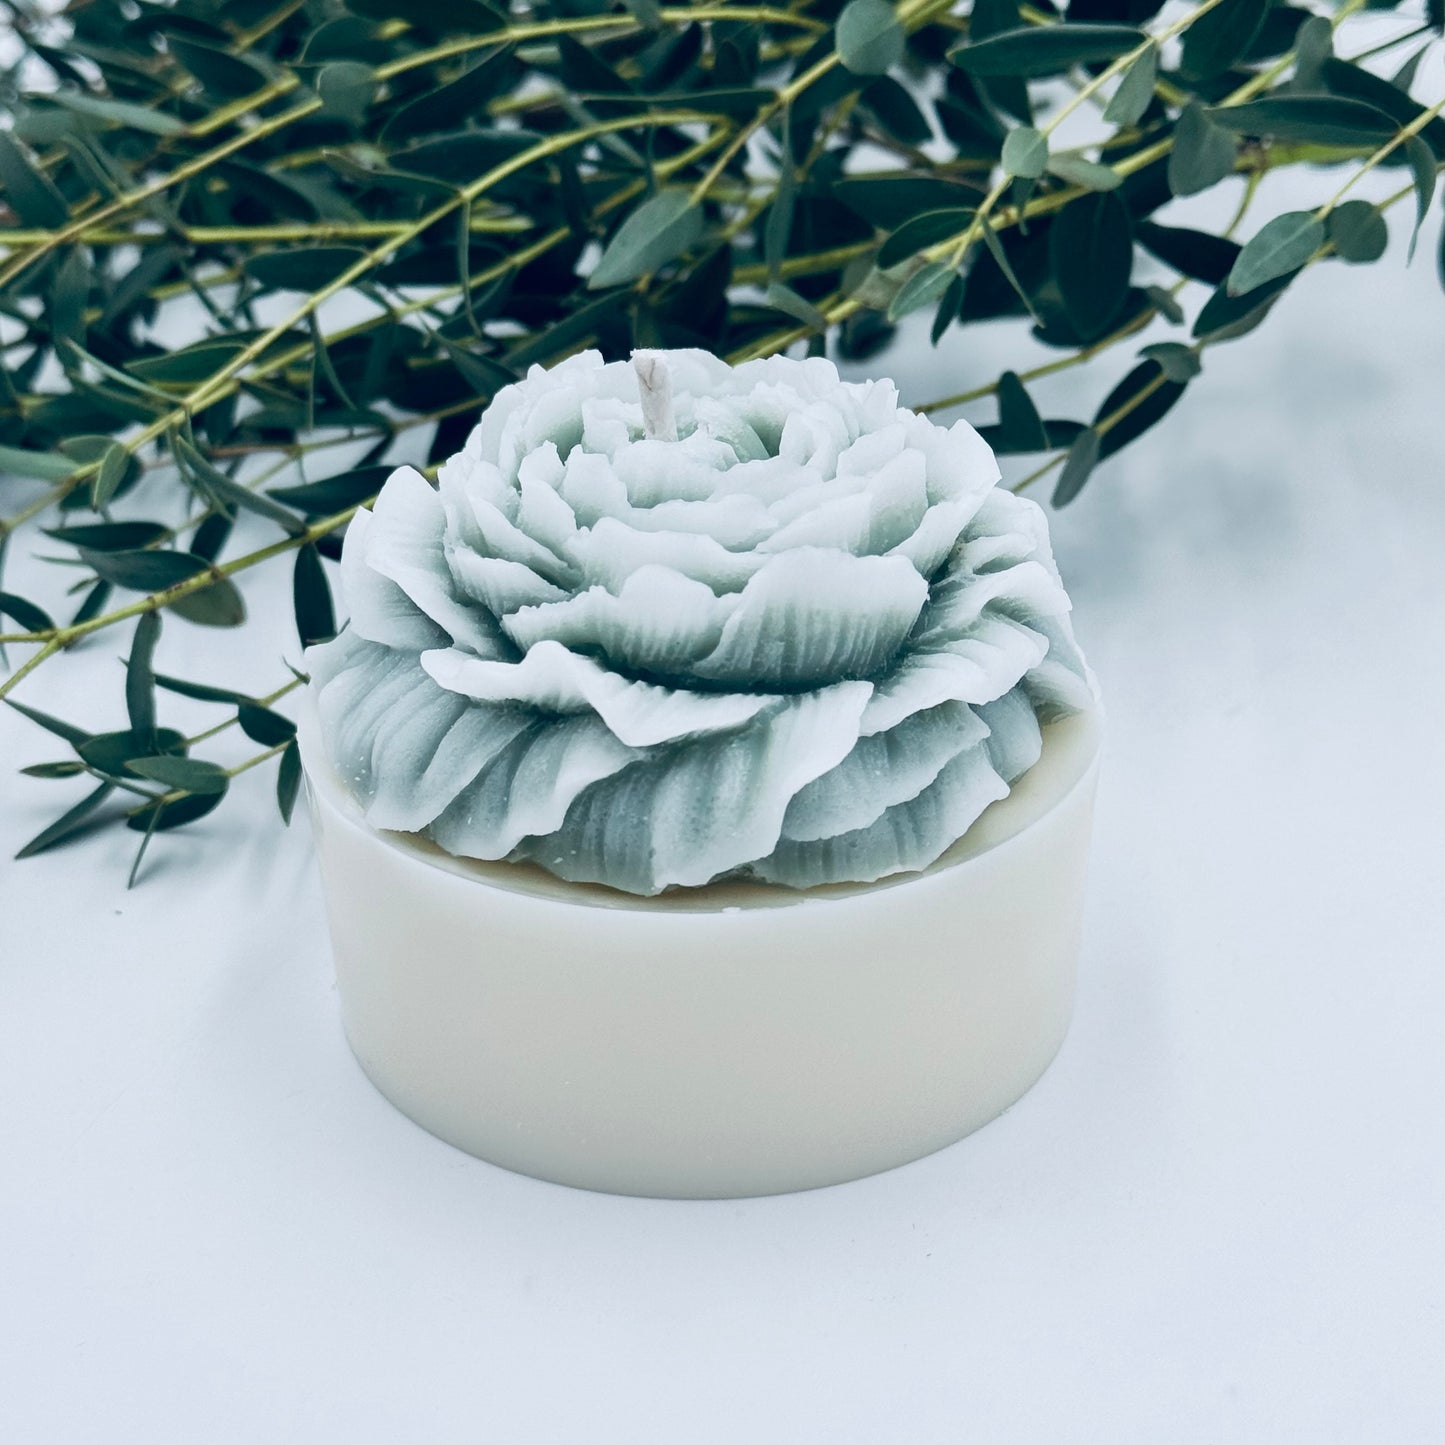 Dabīgā sojas vaska svece “Peonija”, balta ar zaļu pieskārienu, ar vieglu ziedu aromātu